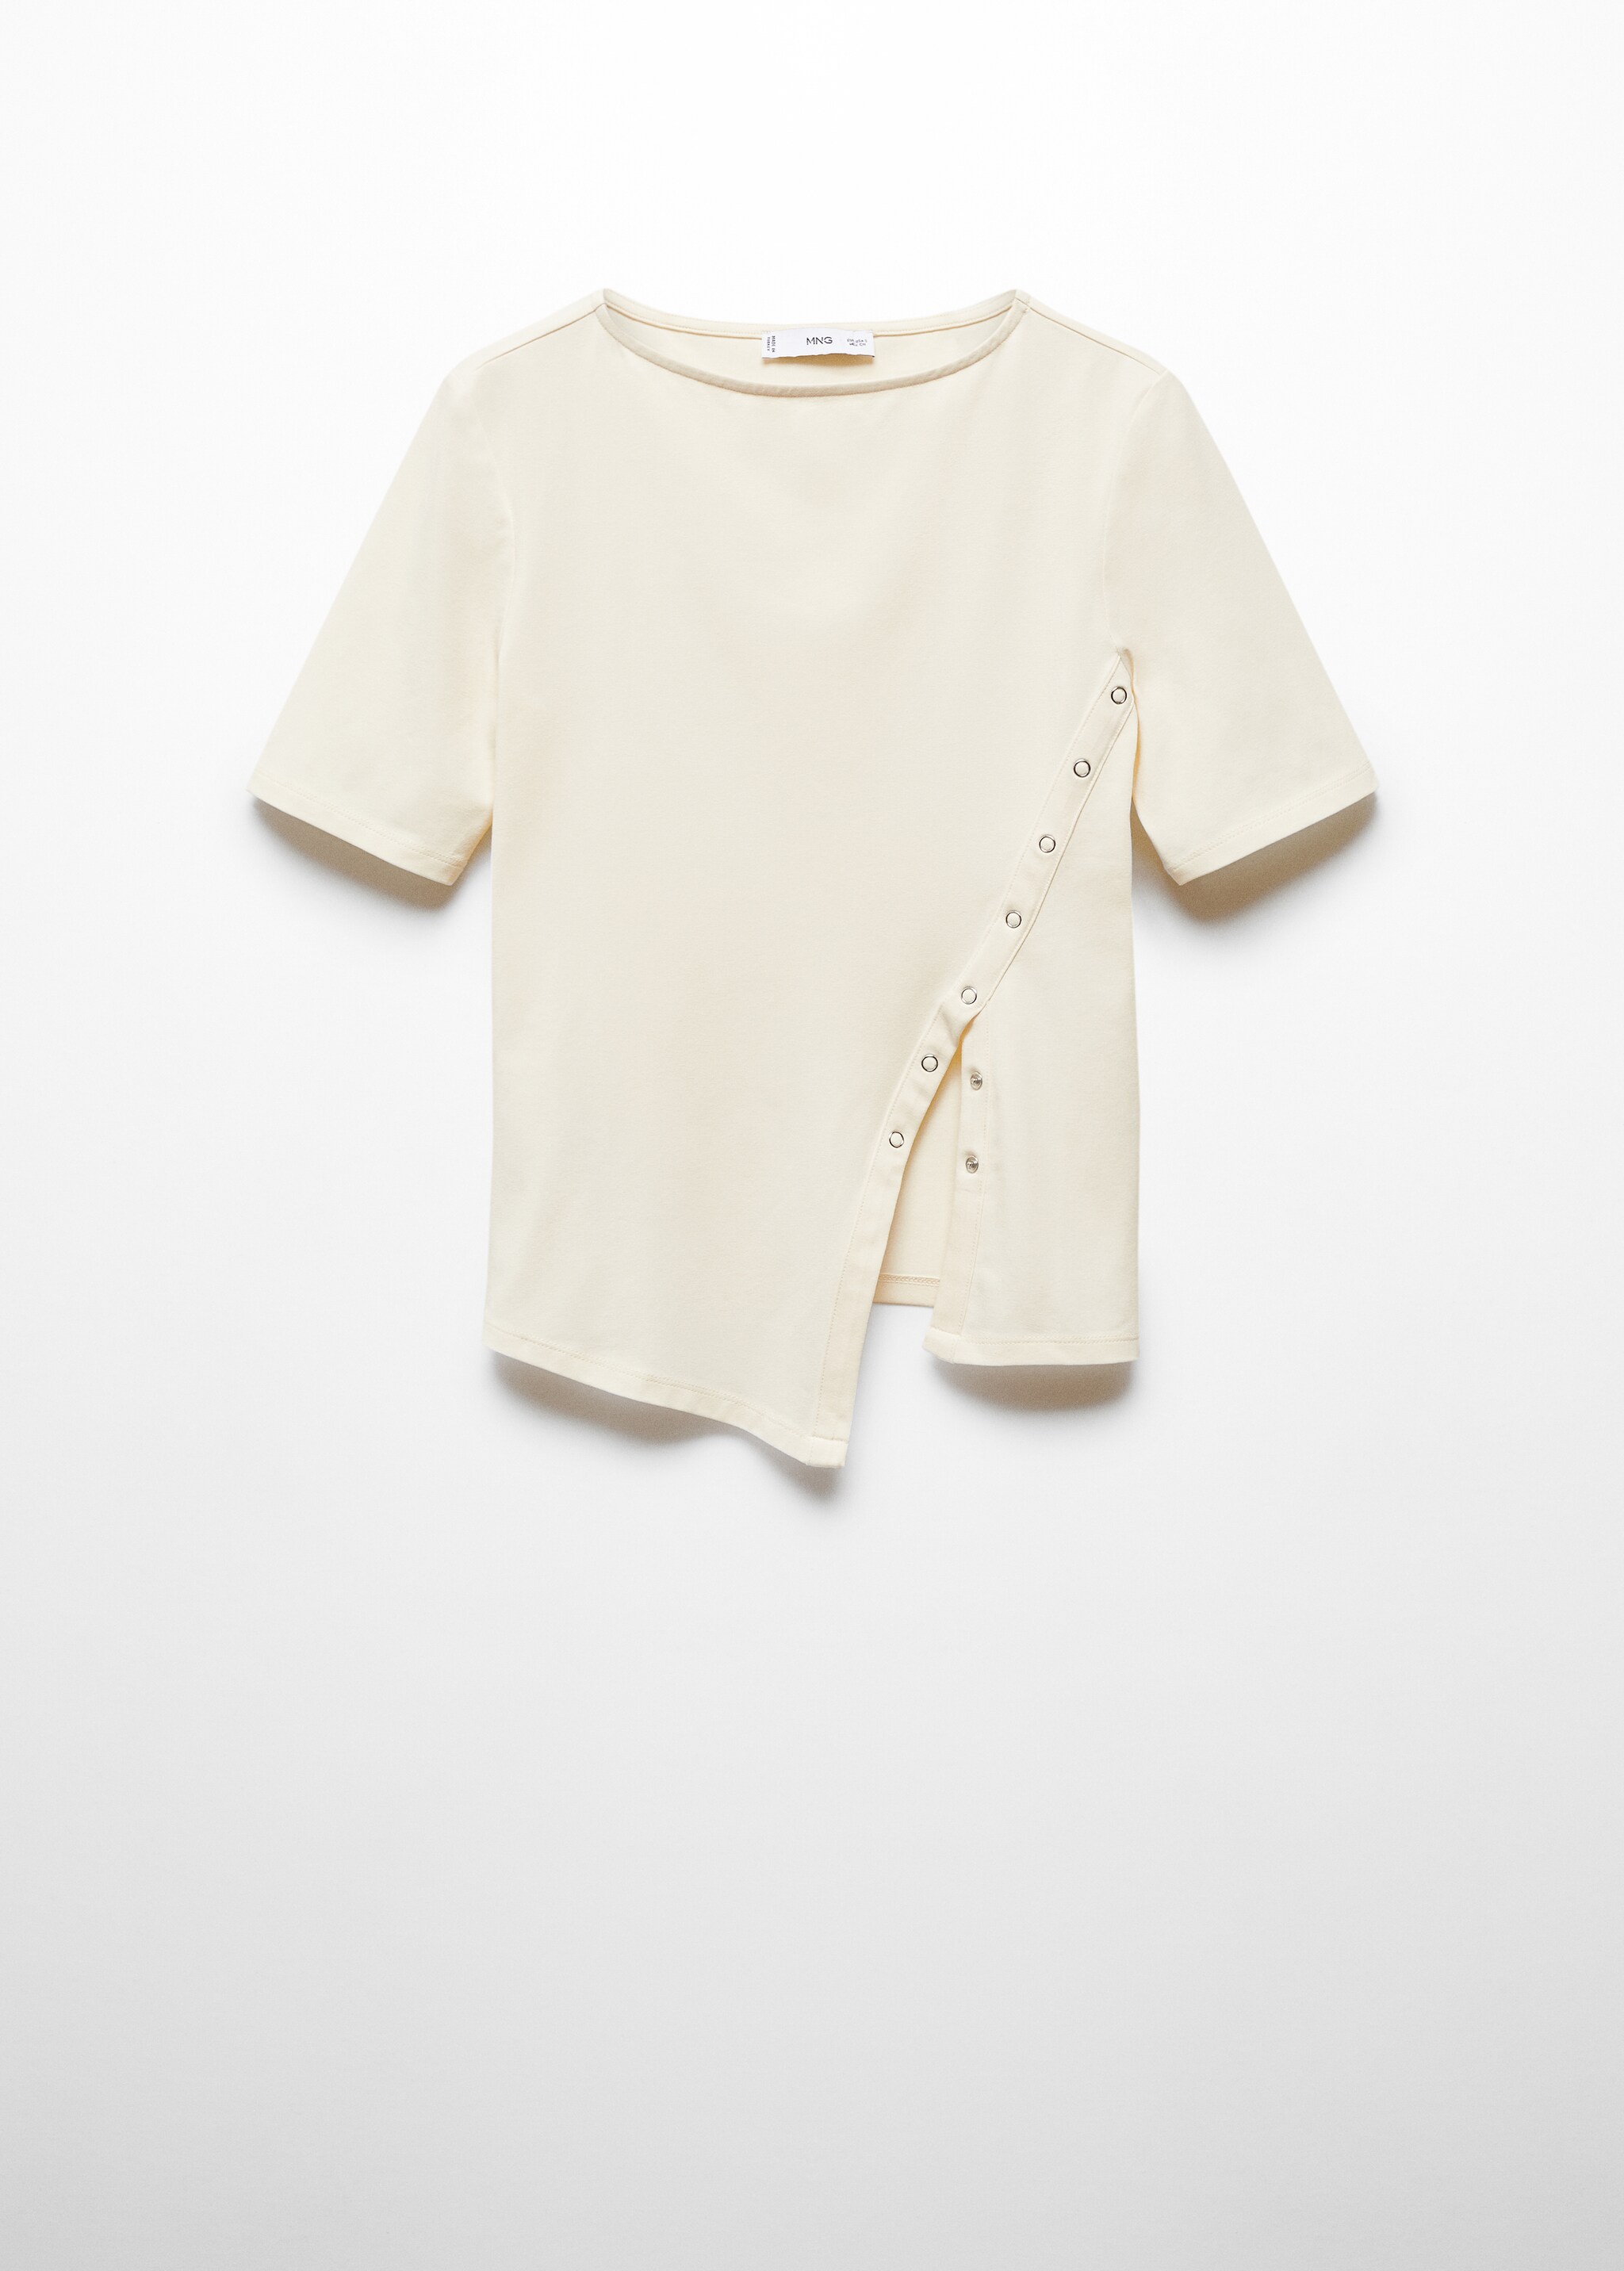  Camiseta algodón abertura - Artículo sin modelo